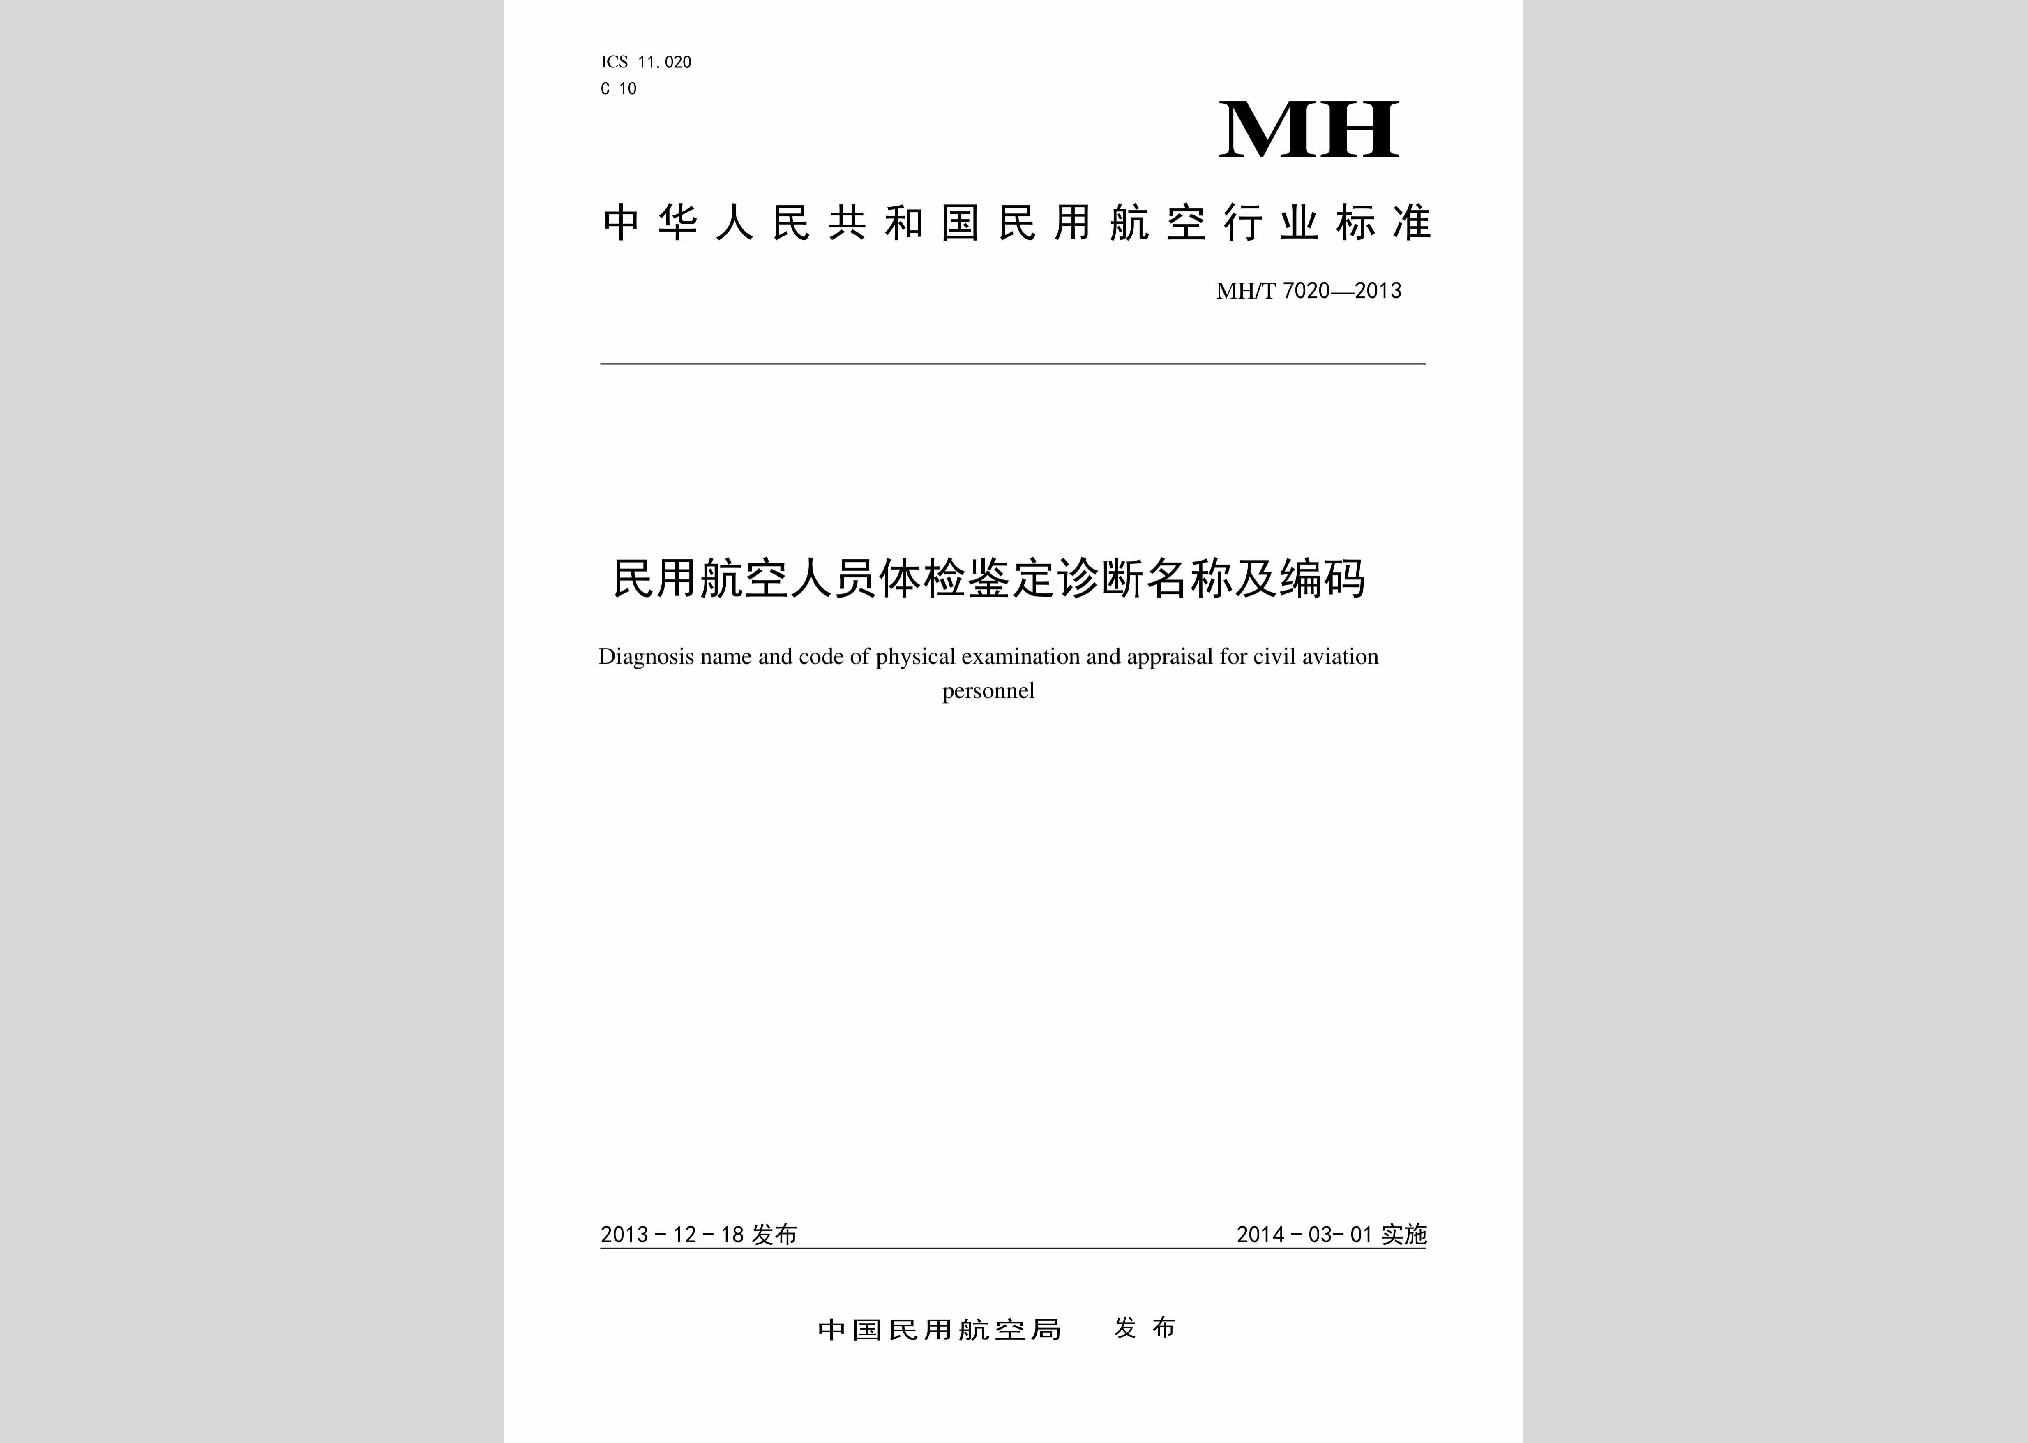 MH/T7020-2013：民用航空人员体检鉴定诊断名称及编码